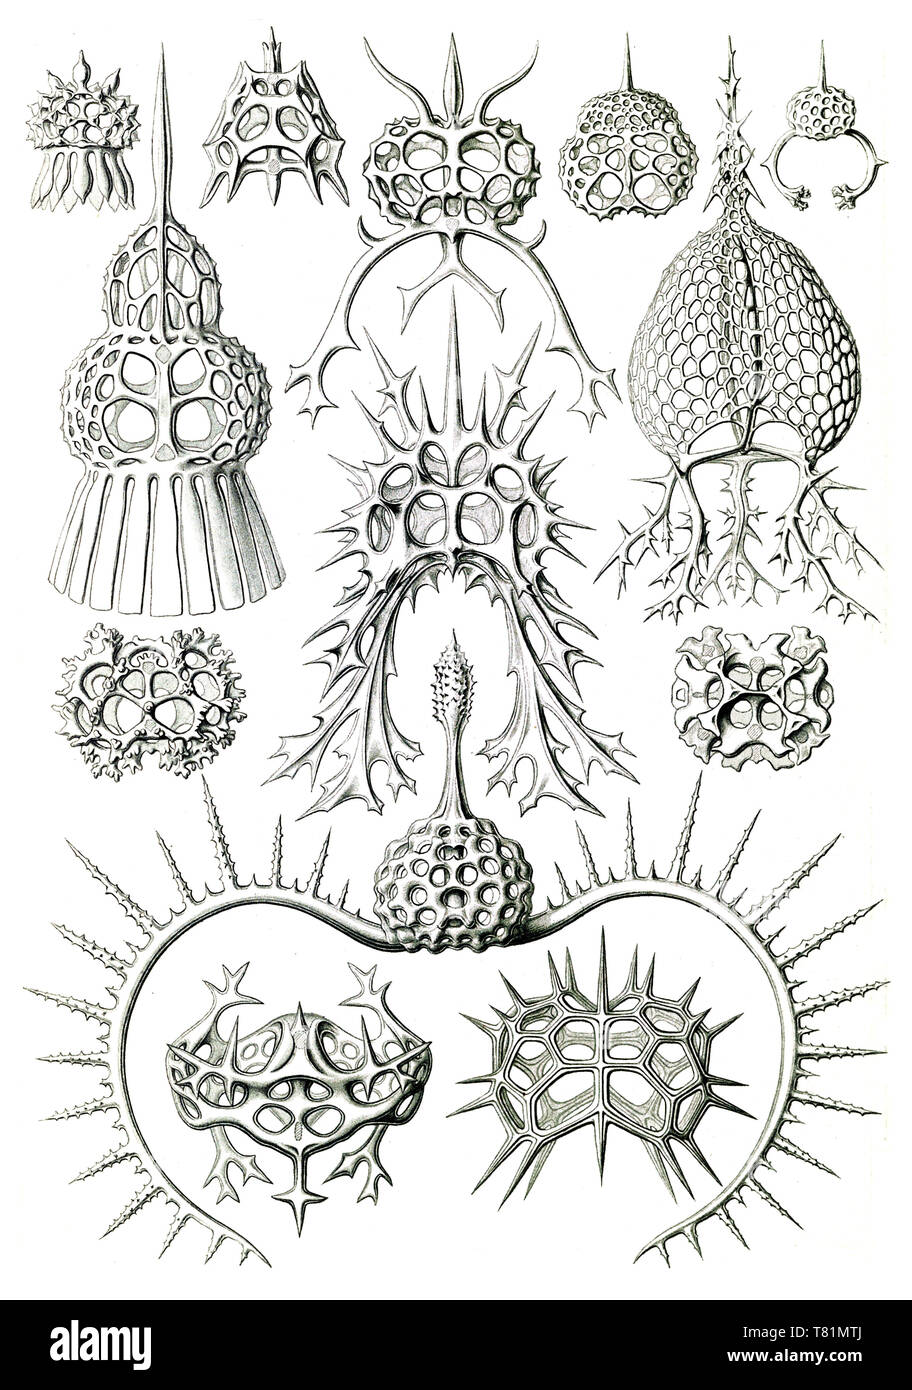 Ernst Haeckel, protozoos, radiolarios Foto de stock